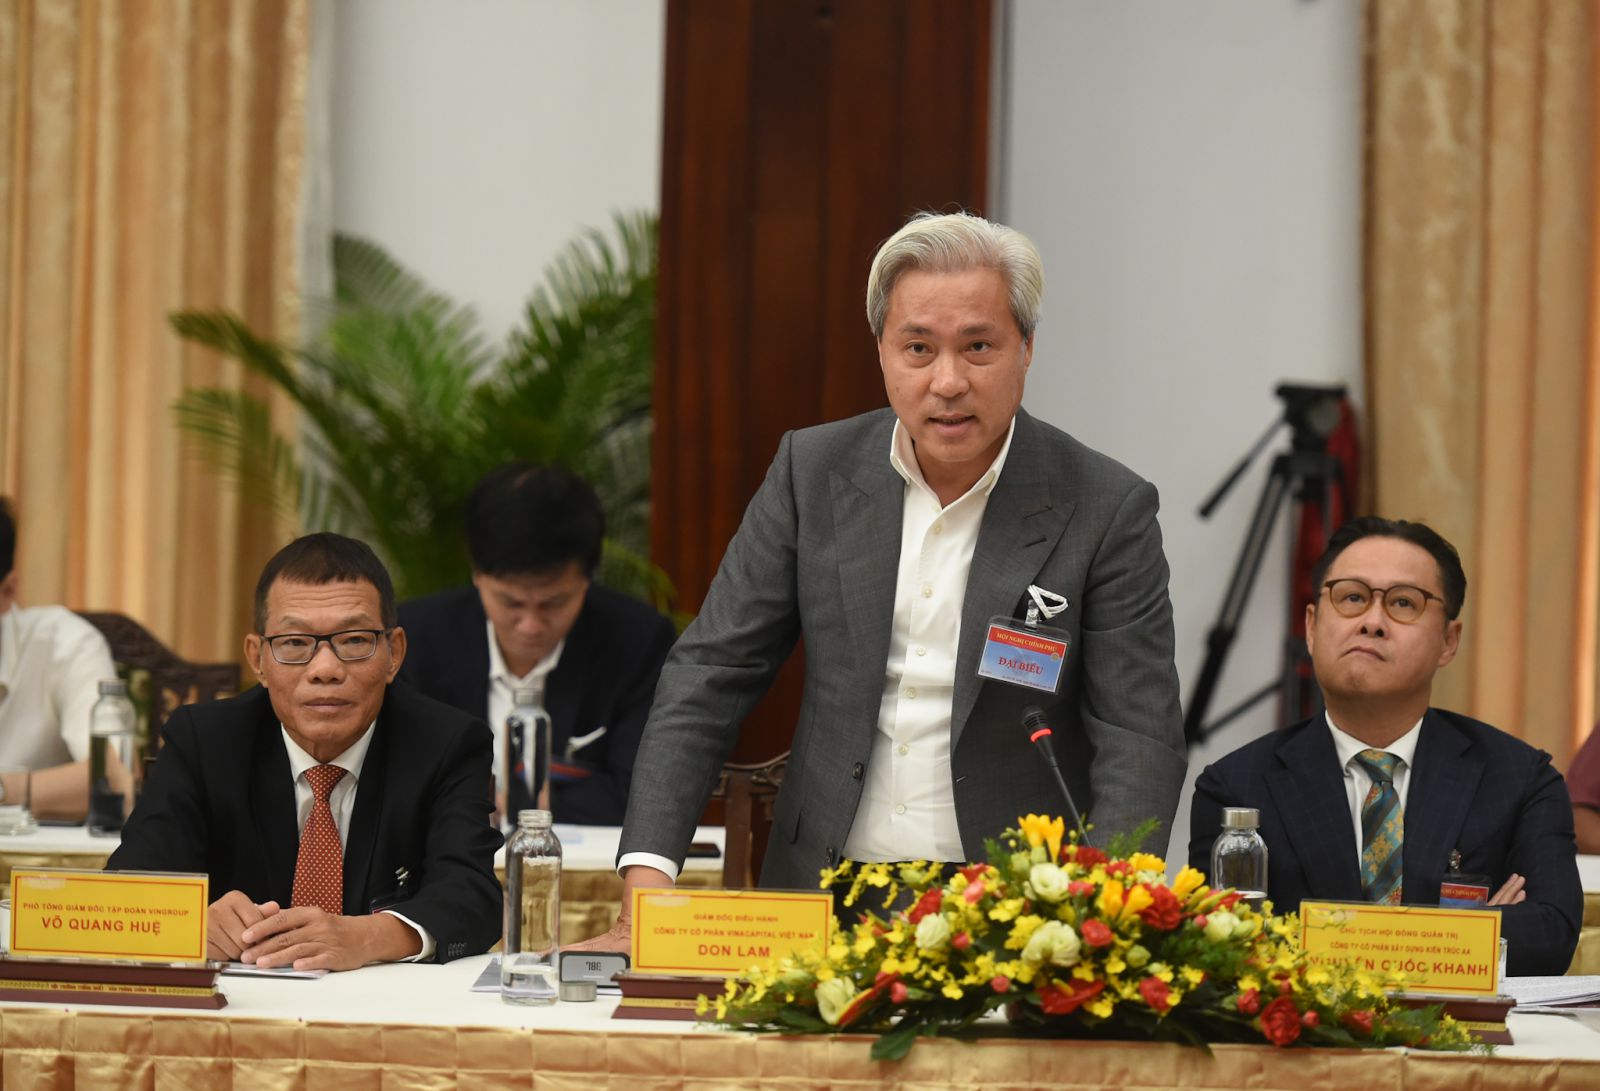 Ông Don Lam, Tổng Giám đốc Tập đoàn VinaCapital: Hướng tới 2045, chúng ta cần phát huy nội lực để đón ngoại lực phục vụ xây dựng đất nước. Ảnh: VGP/Quang Hiếu